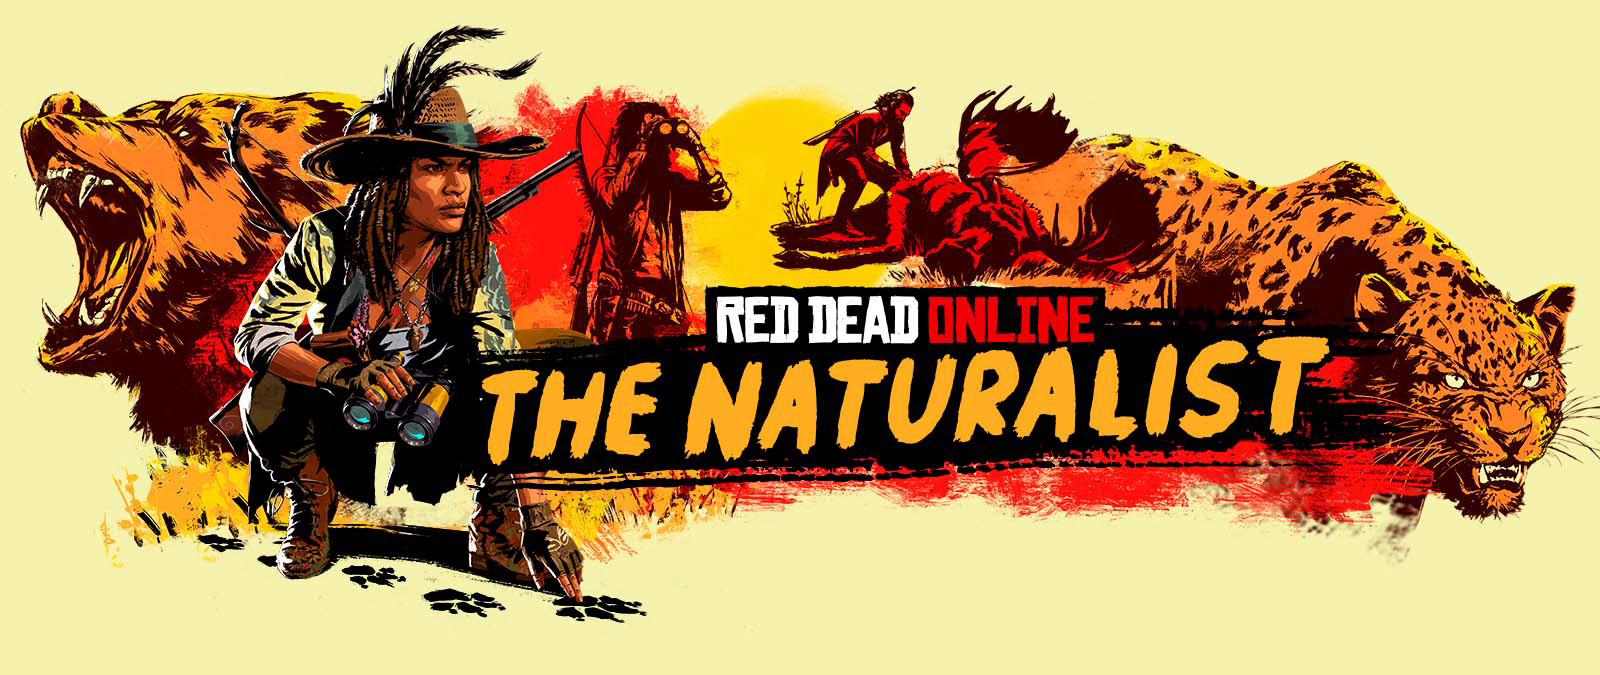 Red Dead Online. O Naturalista. Personagens a seguir e a caçar animais de grande porte.